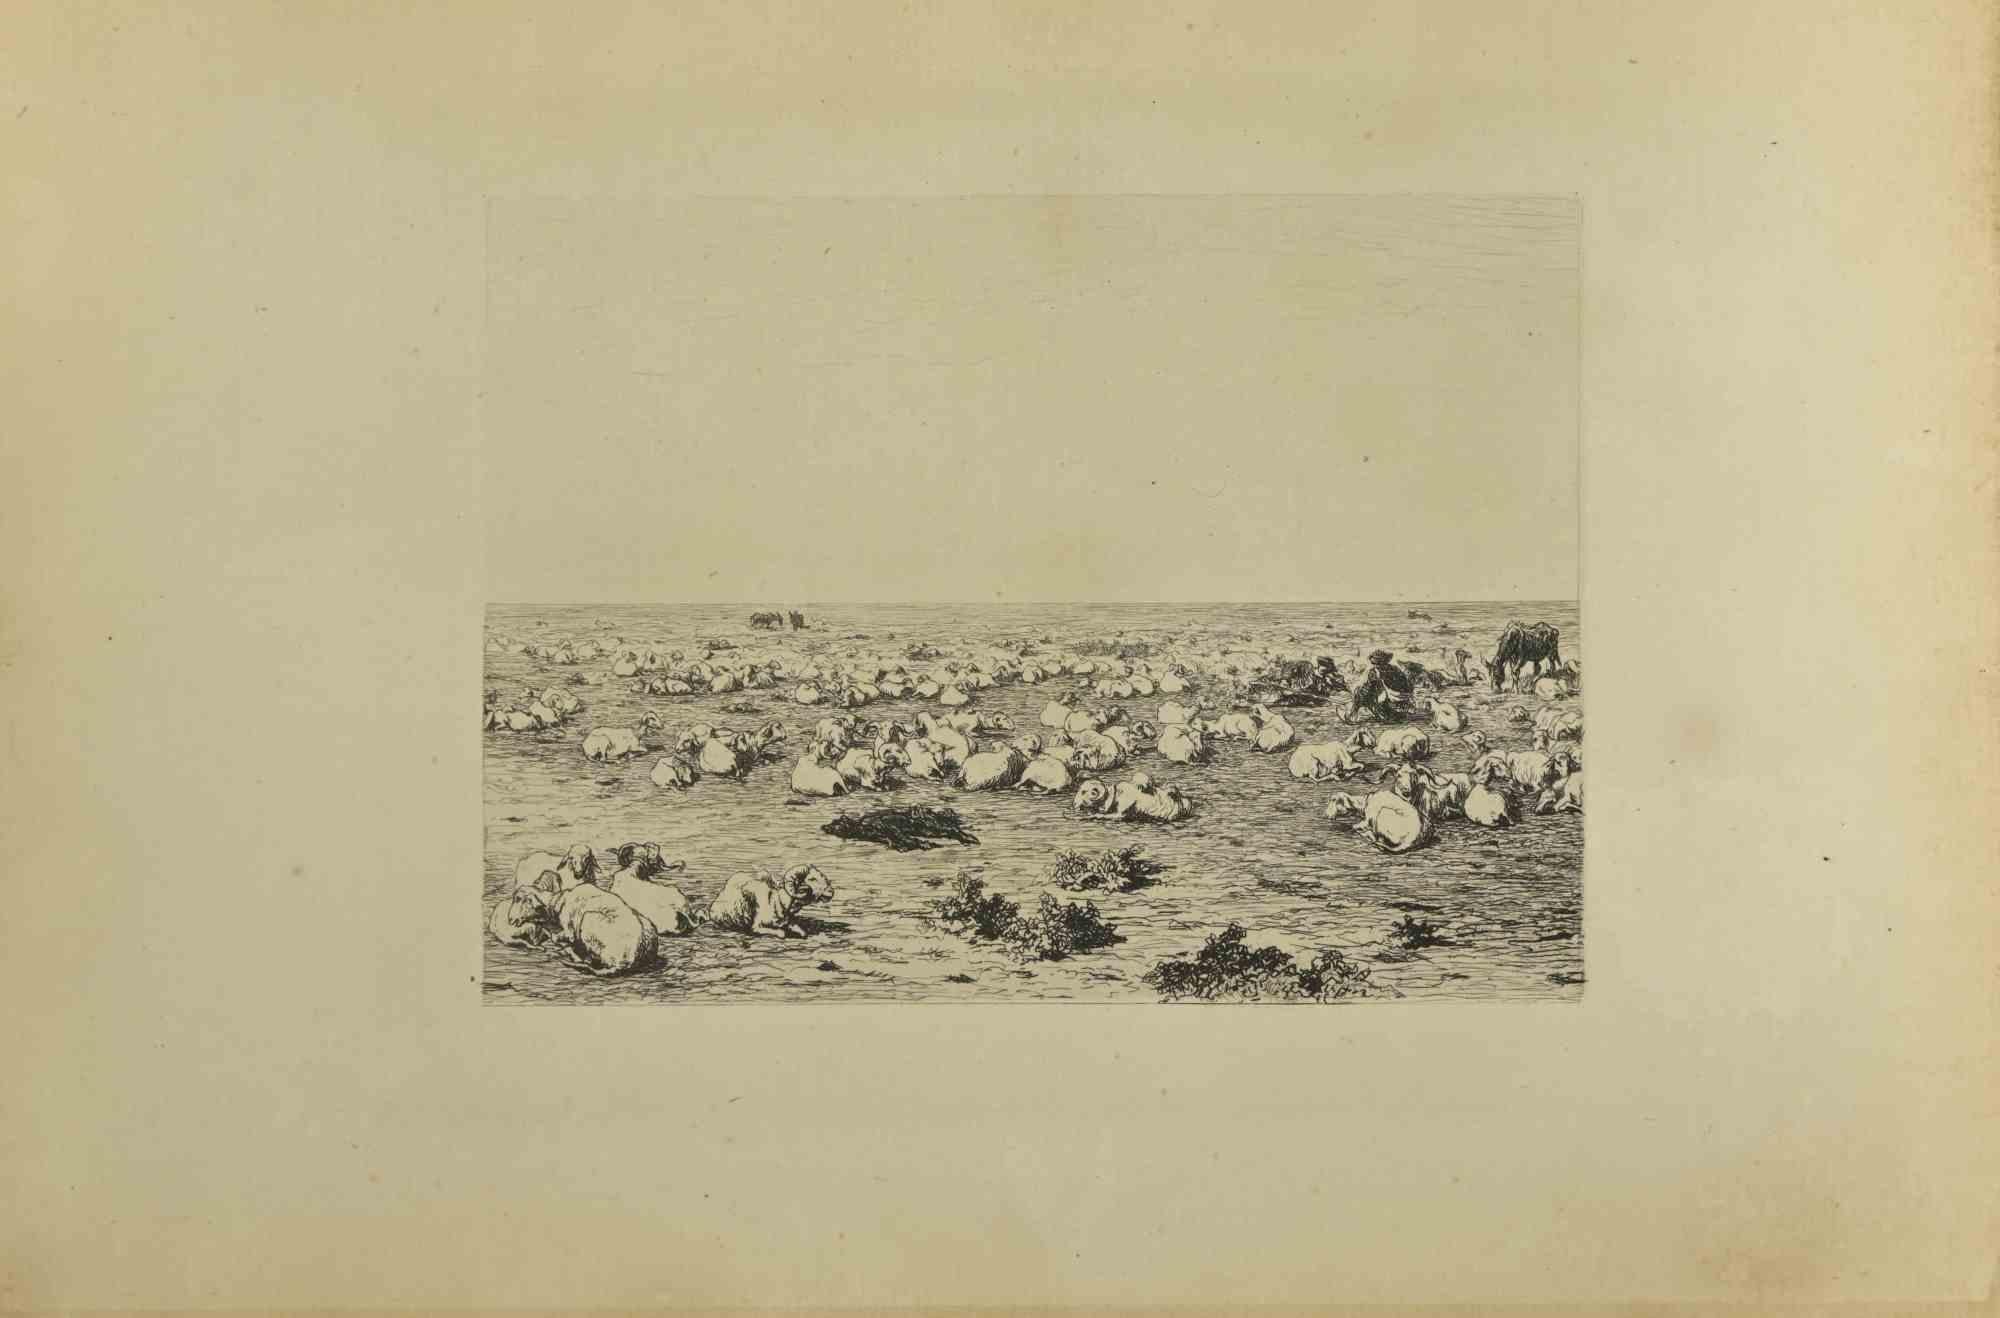 Die Herde ist eine Originalradierung von Eugène Burnand (1850-1921) aus dem späten 19. Jahrhundert.

Guter Zustand mit Stockflecken.
 
Das Kunstwerk wird durch kurze und geschickte Striche realisiert, eine bewundernswerte Szene, die durch